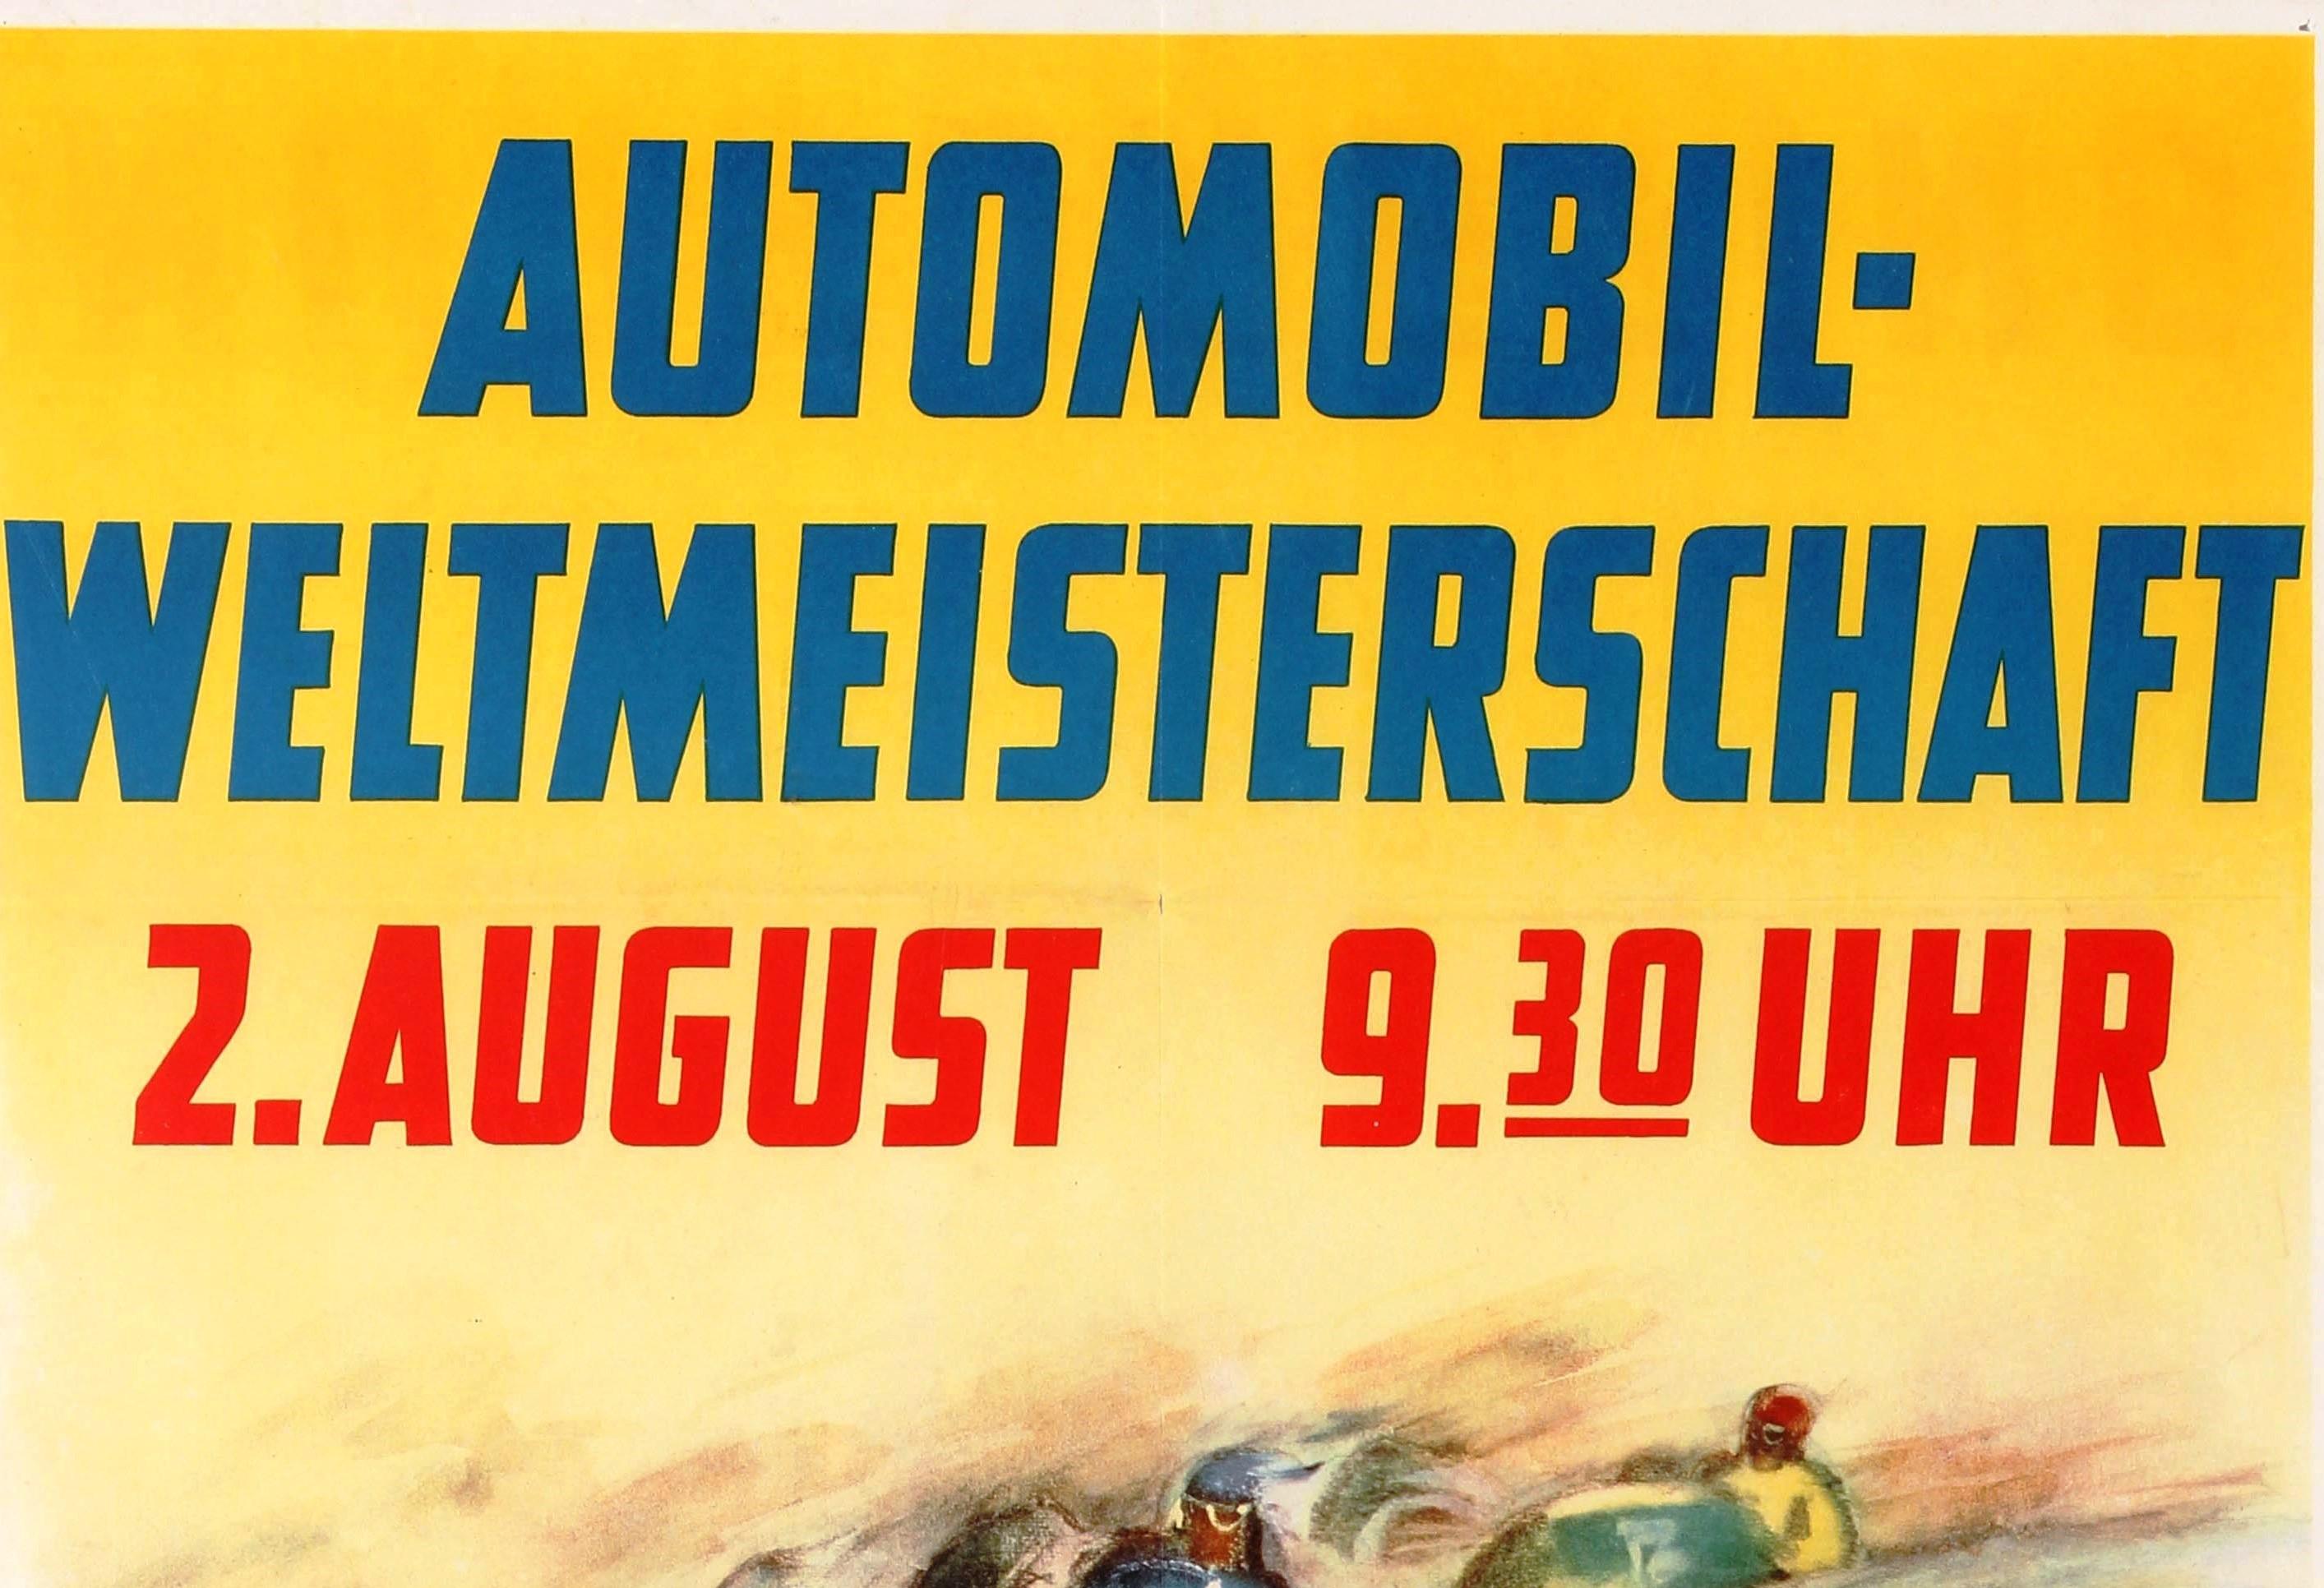 Original Vintage Grand Prix F1 Motor Sport Poster Weltmeisterschaft Nurburgring - Print by V. Mundorff